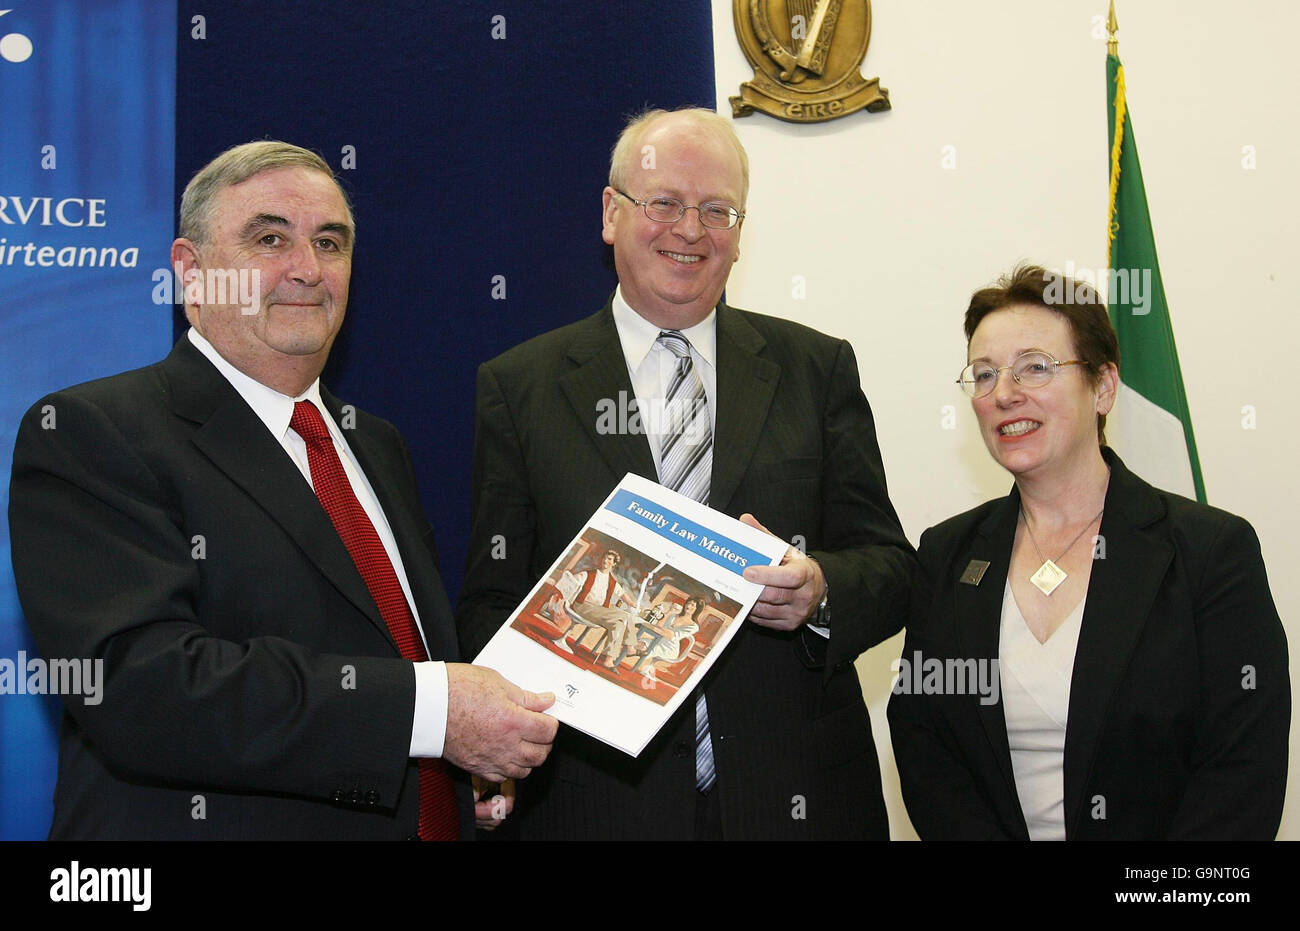 Du Tribunal de la famille rapport lancé - Irlande Banque D'Images